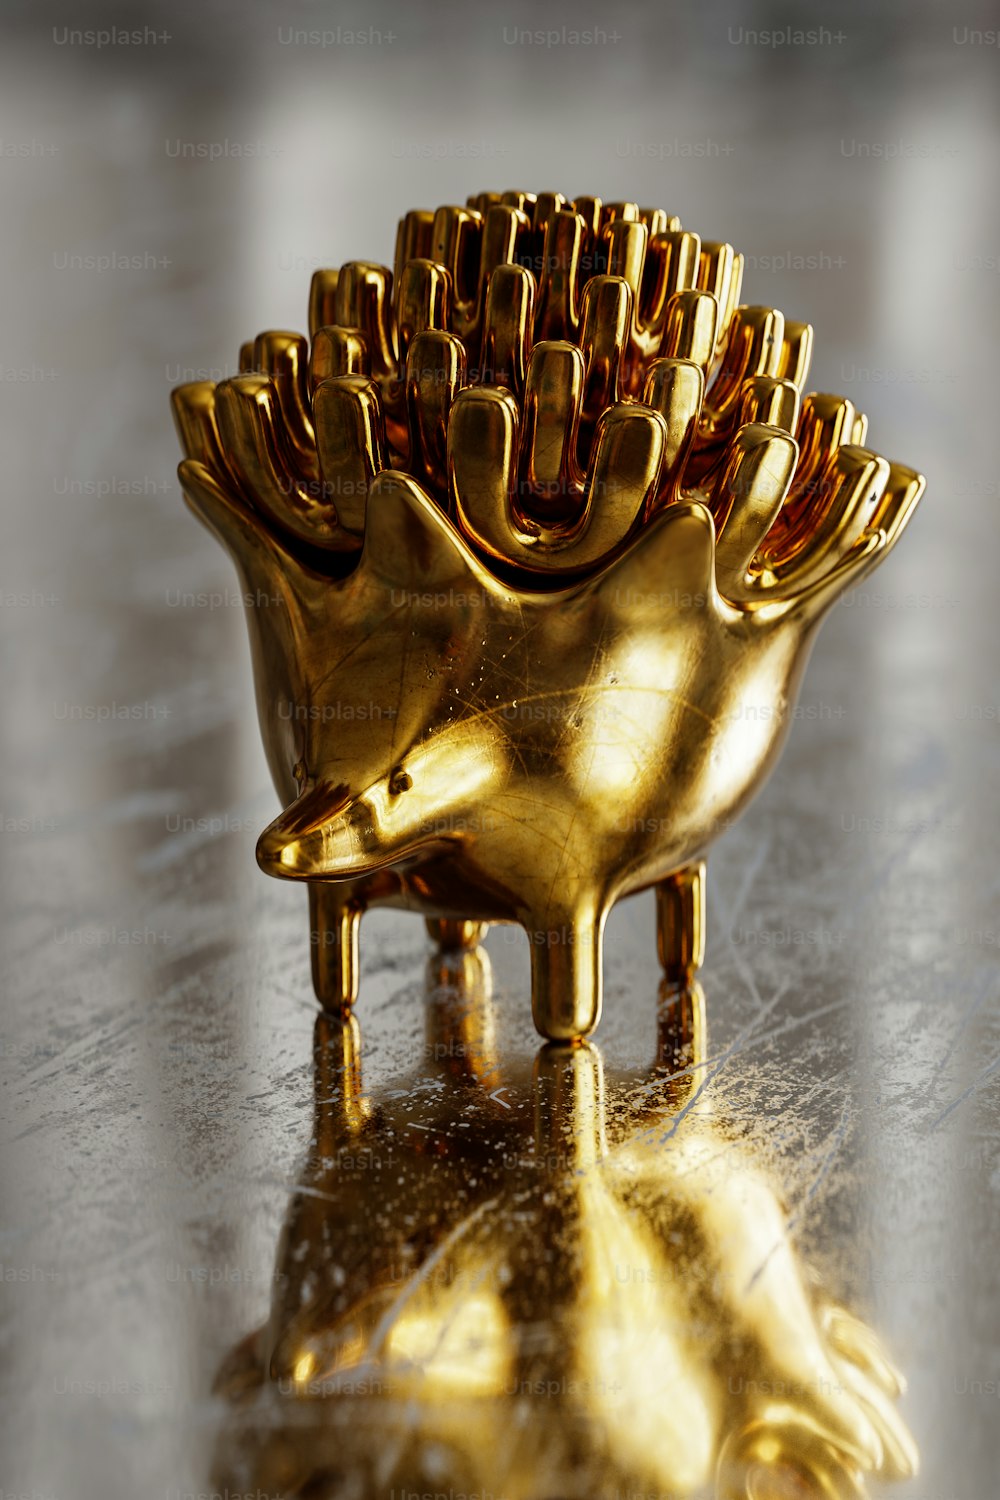 Ein goldenes Objekt, das auf einer glänzenden Oberfläche sitzt